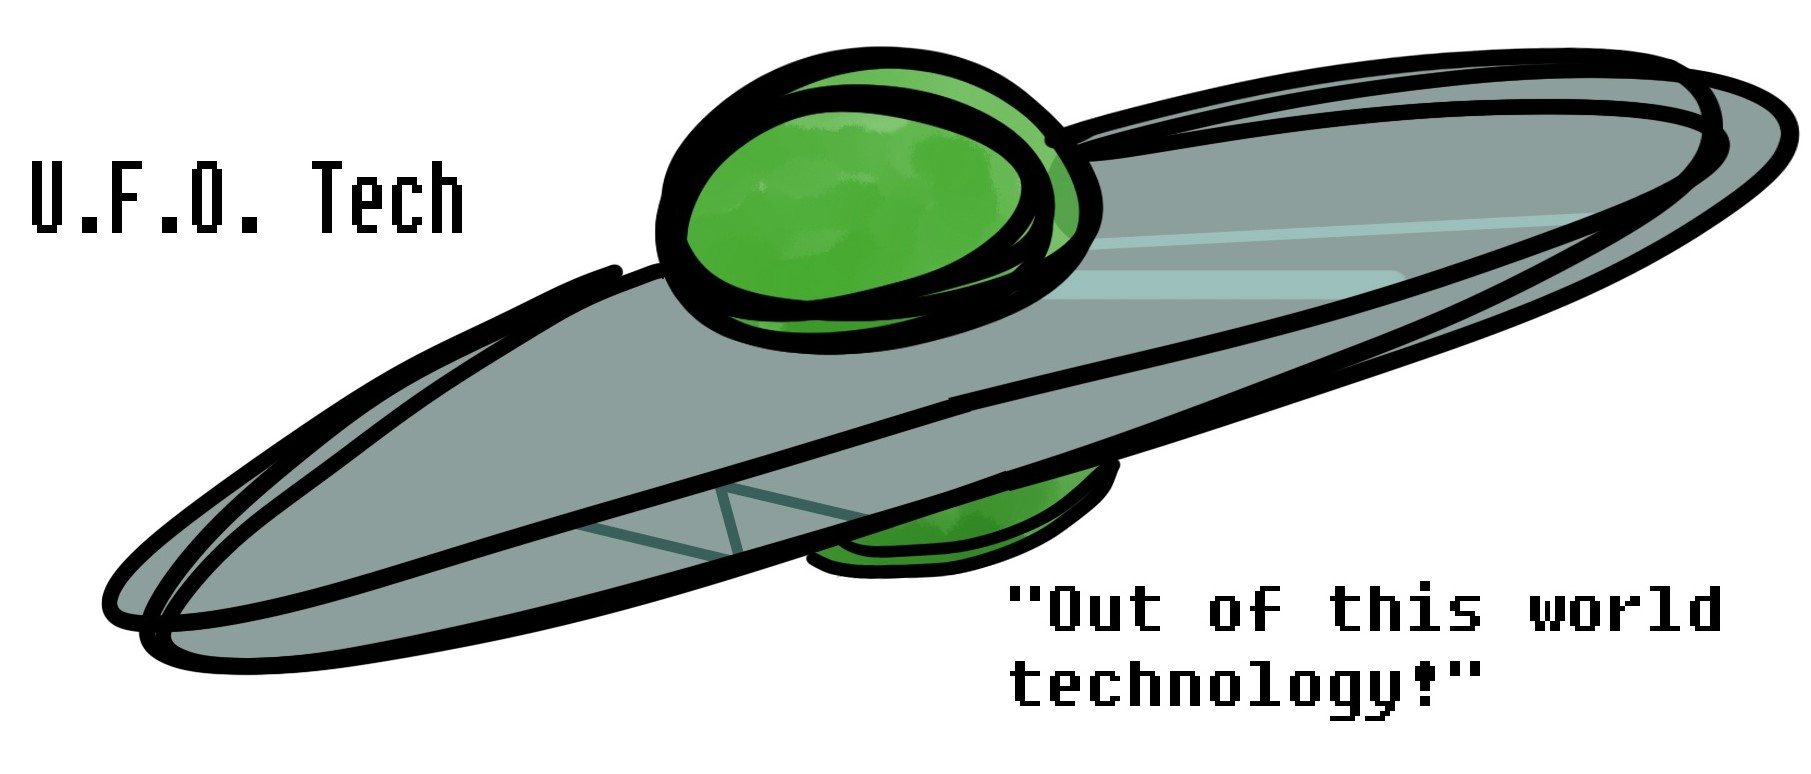 U.F.O. Tech Logo